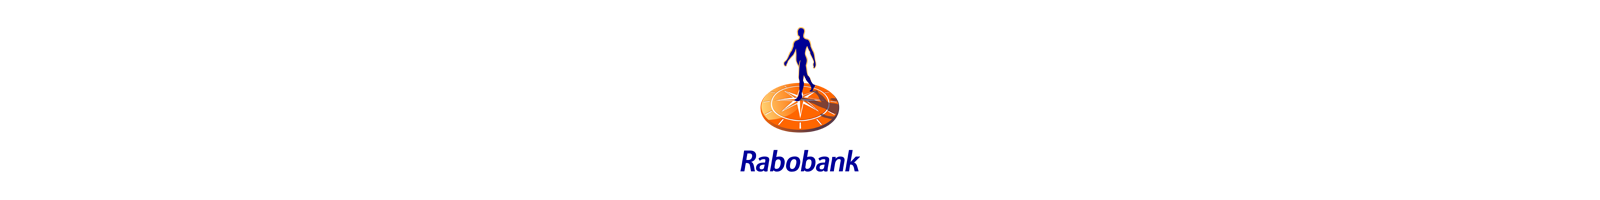 Rabobank / Interpolis